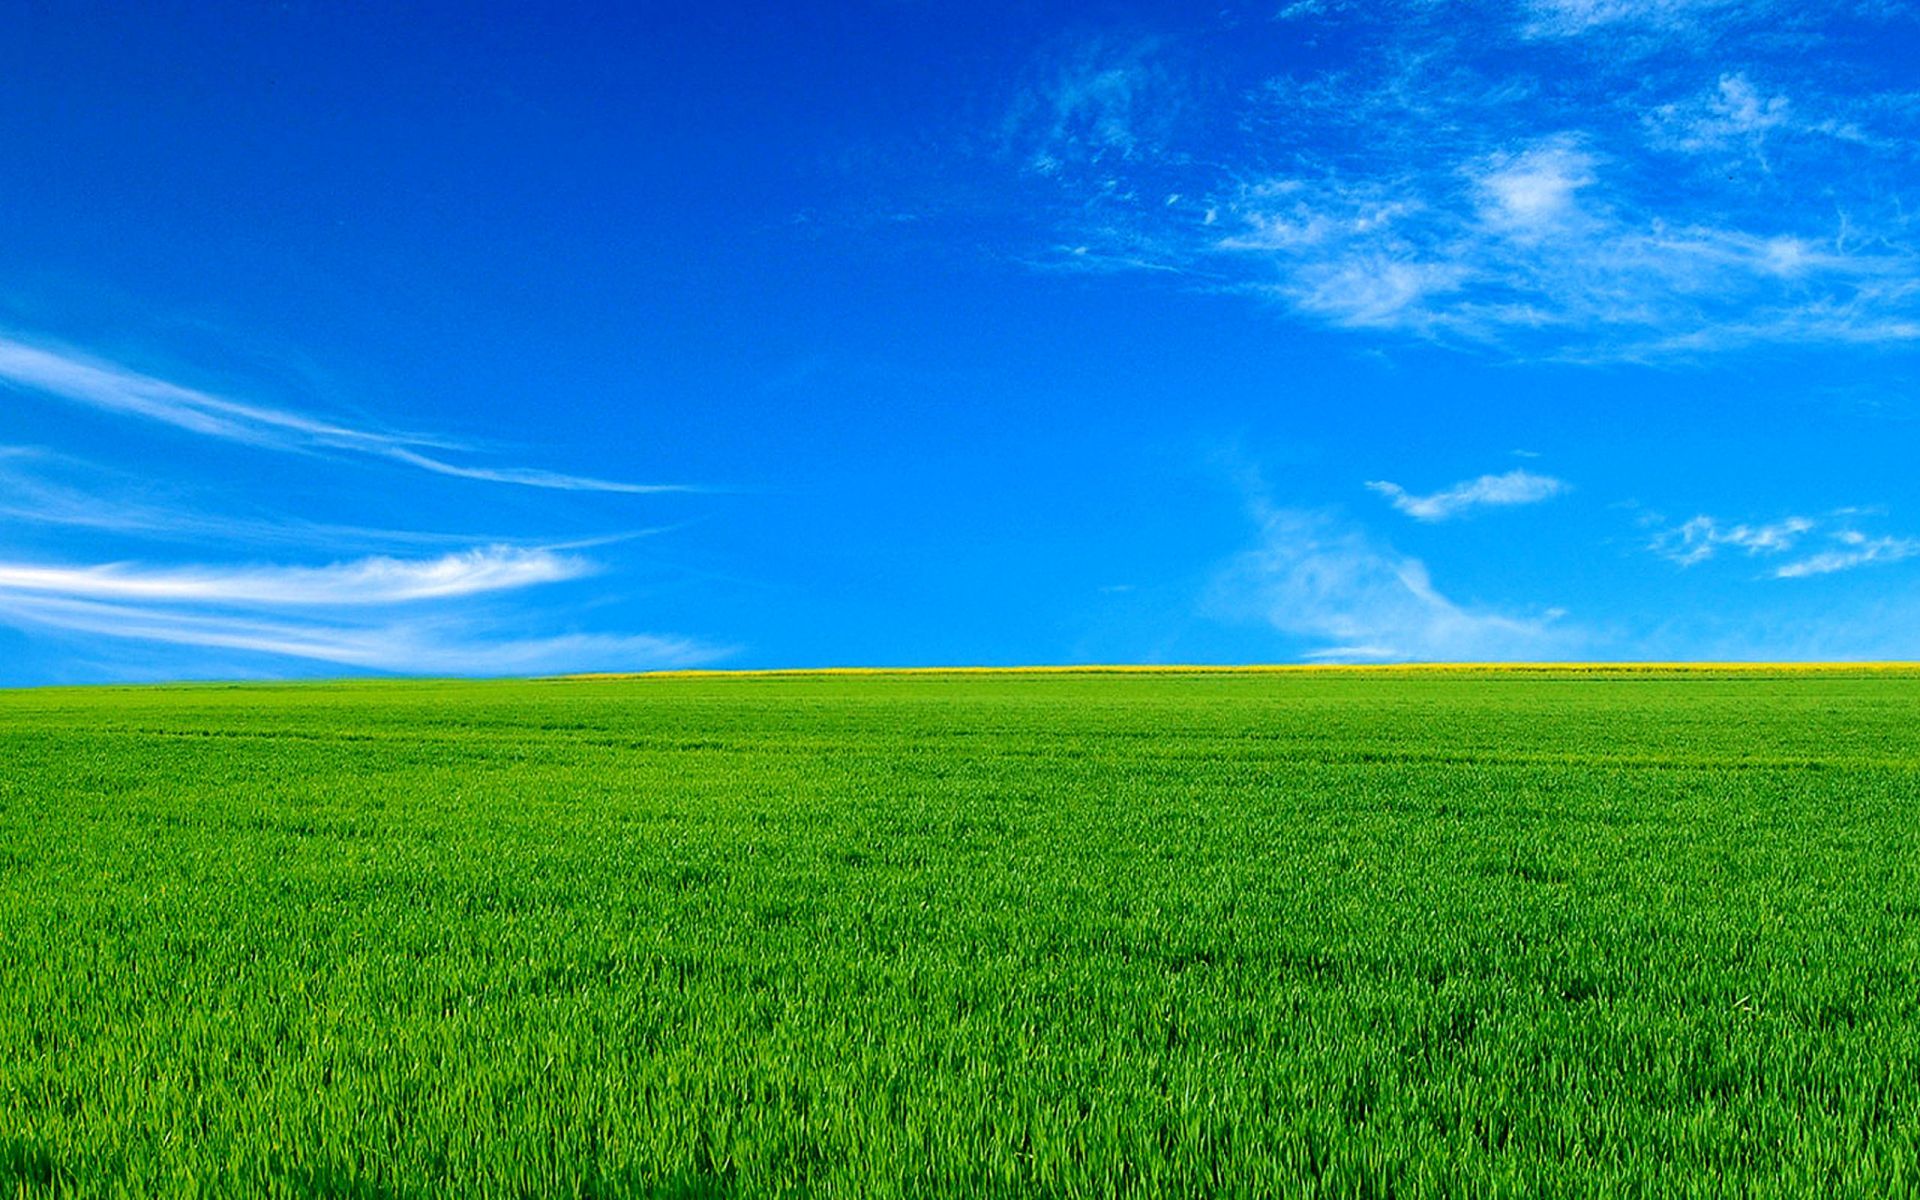 bliss wallpaper hd,grassland,sky,green,natural landscape,field